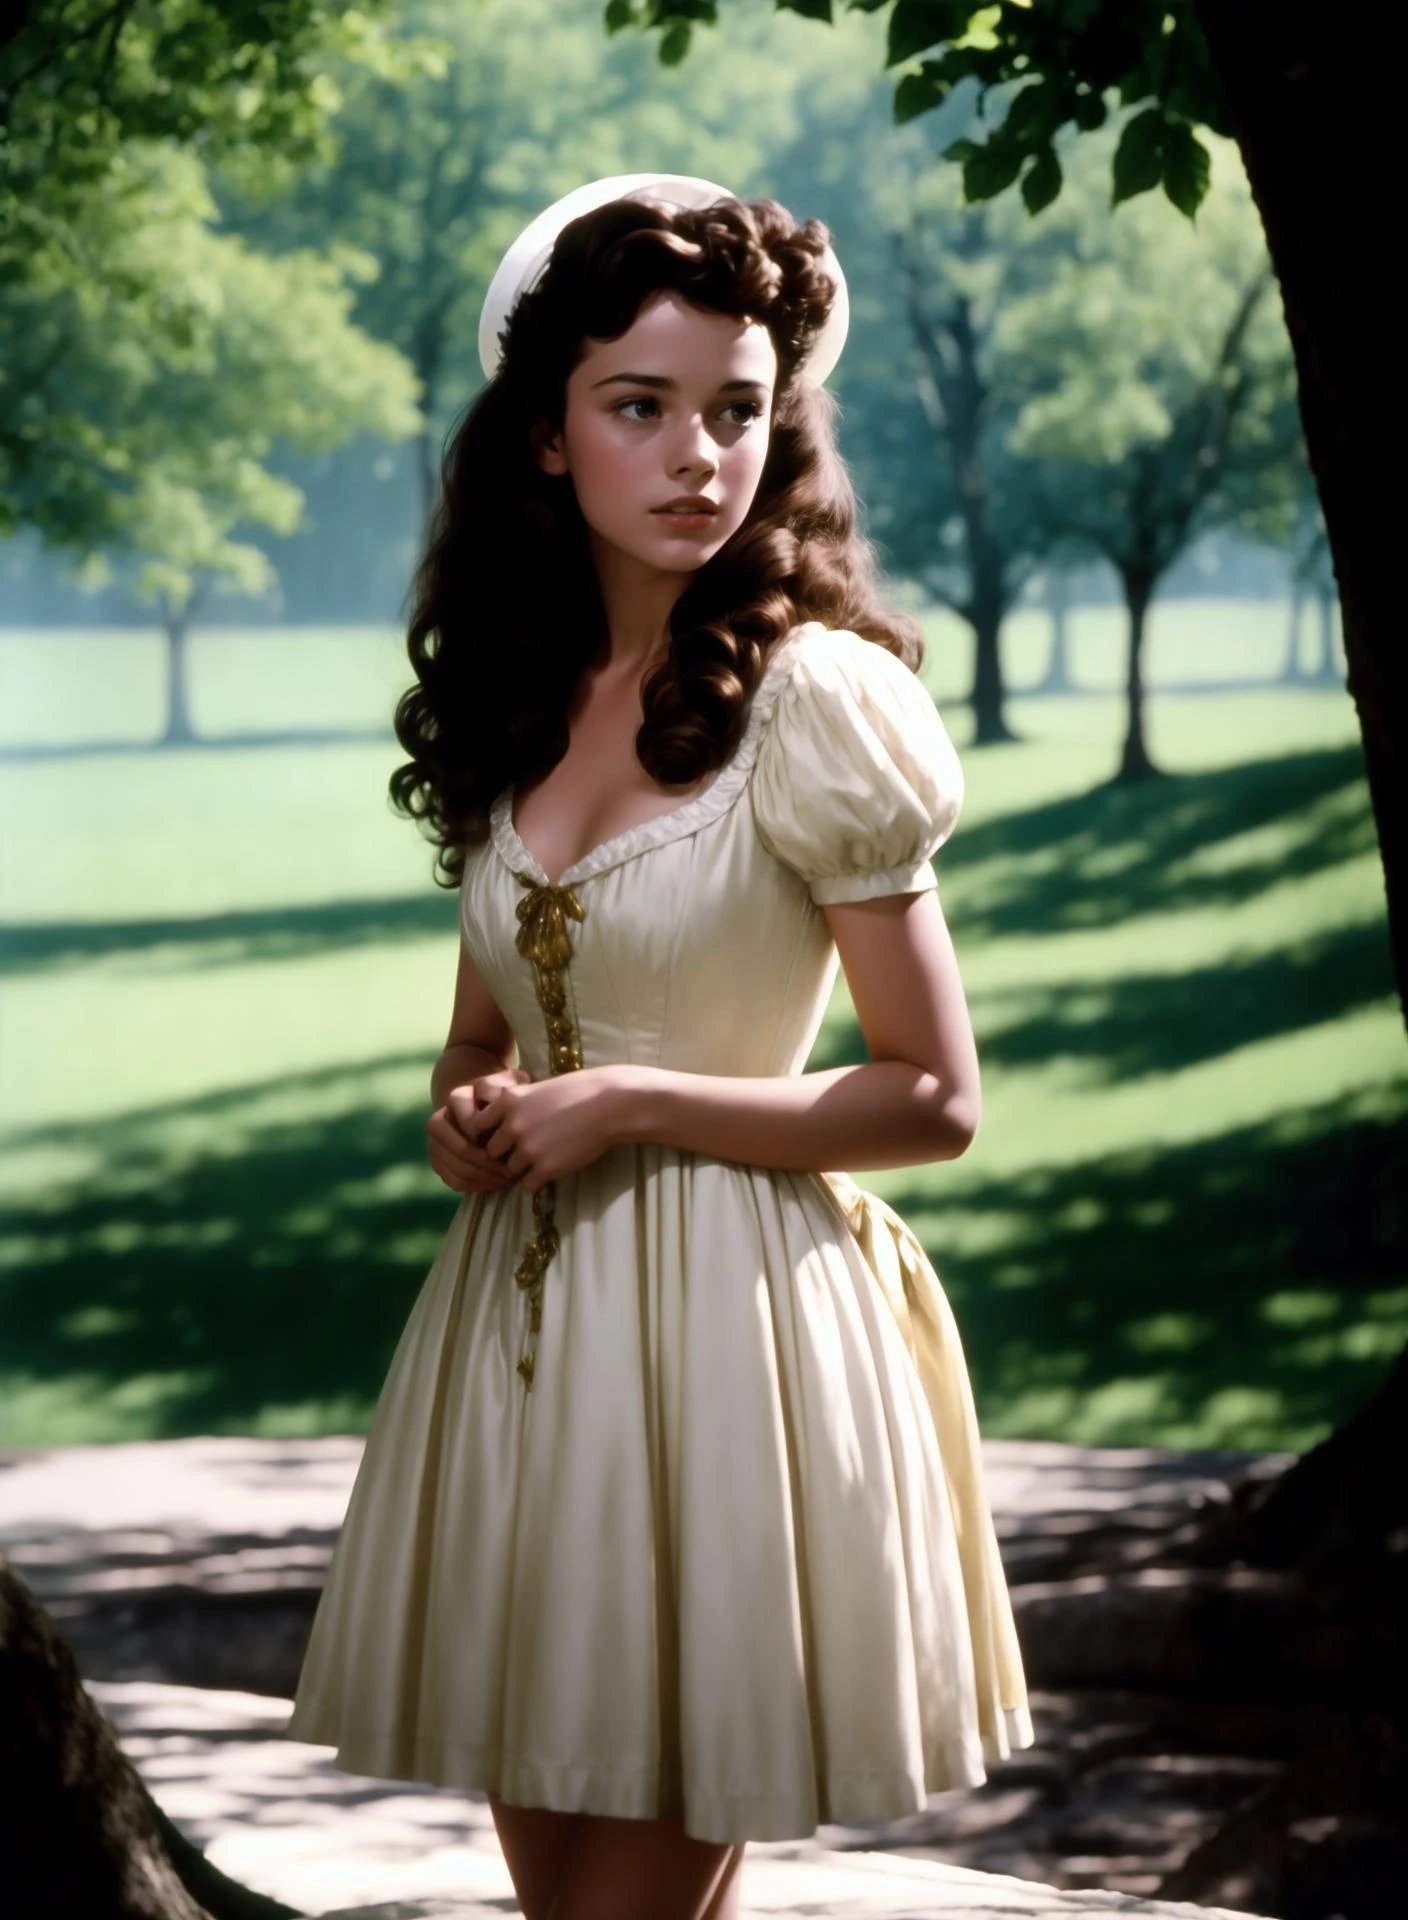 Fotograma de una joven actriz morena en la película Barry Lyndon